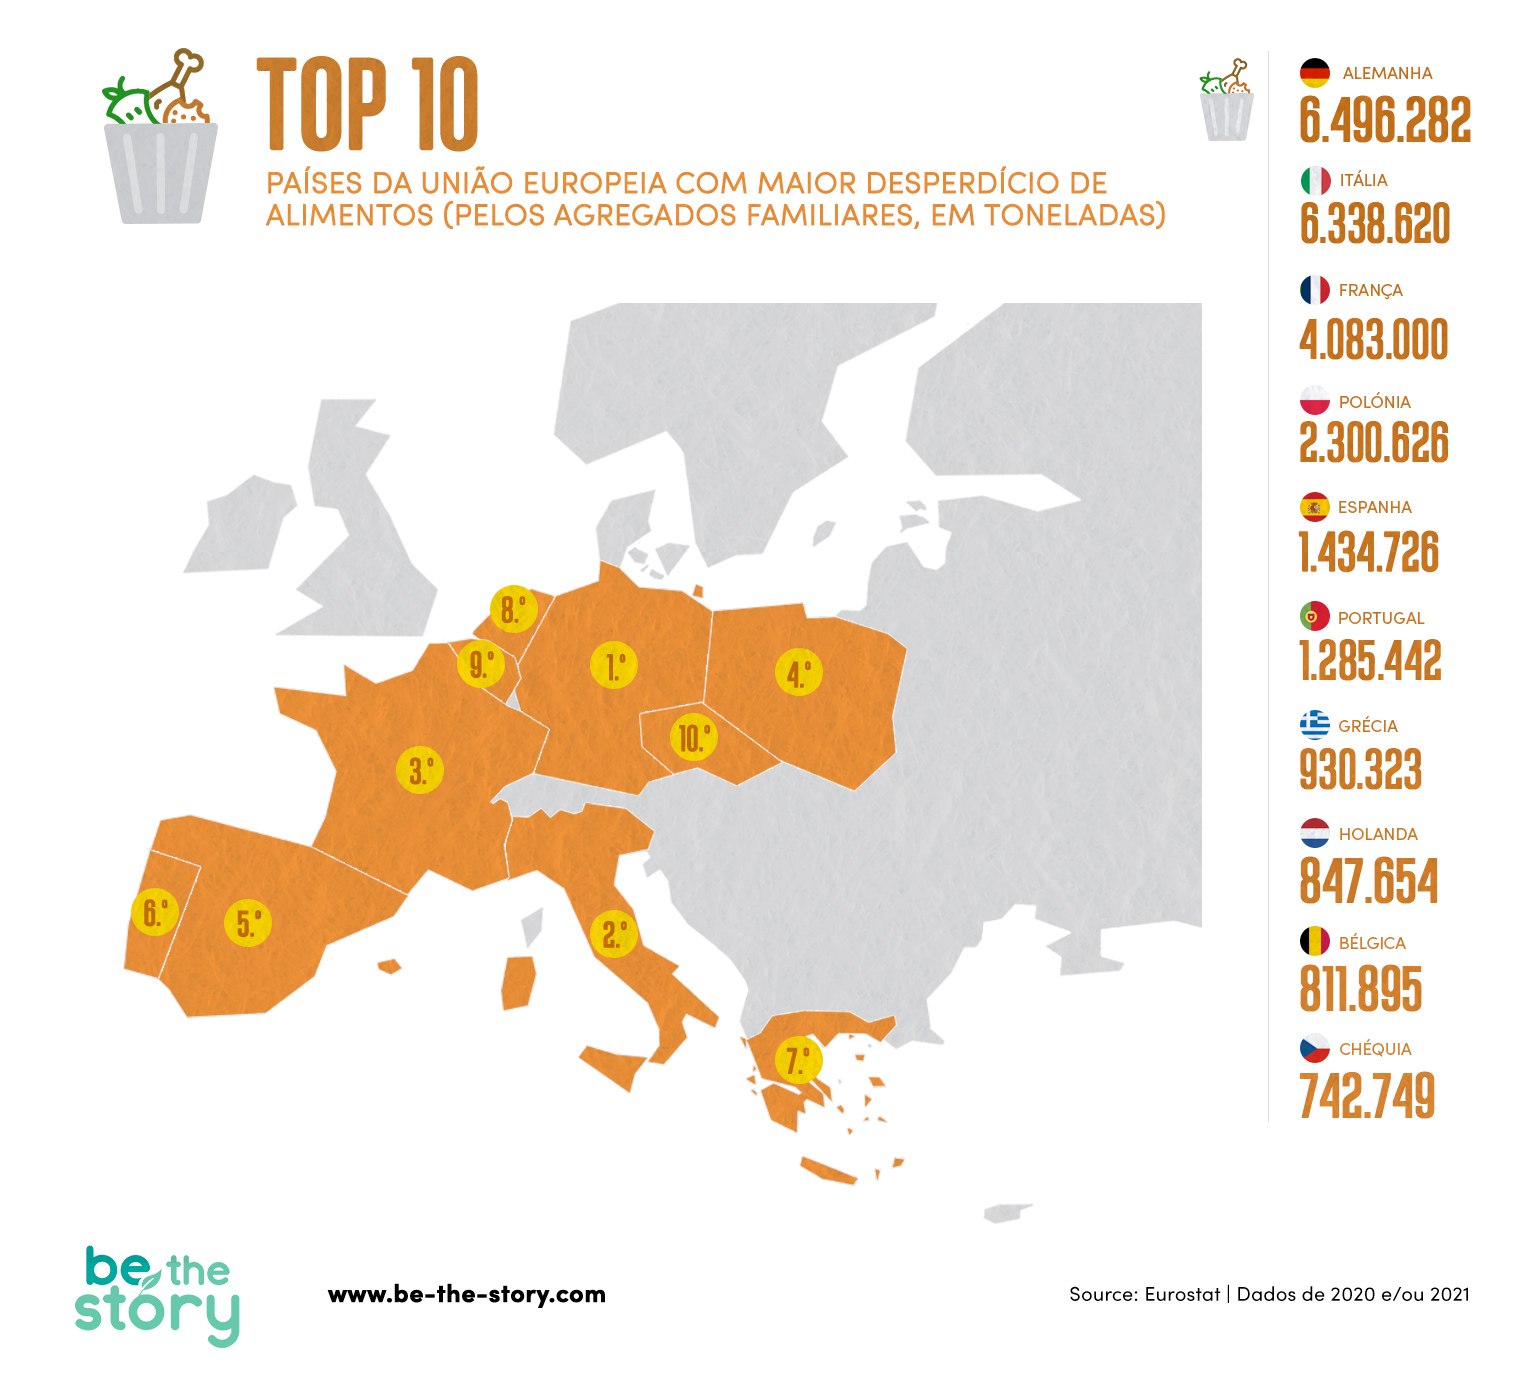 Infografia do top 10 de países da União Europeia com maior desperdício de alimentos (pelos agregados familiares, em toneladas)